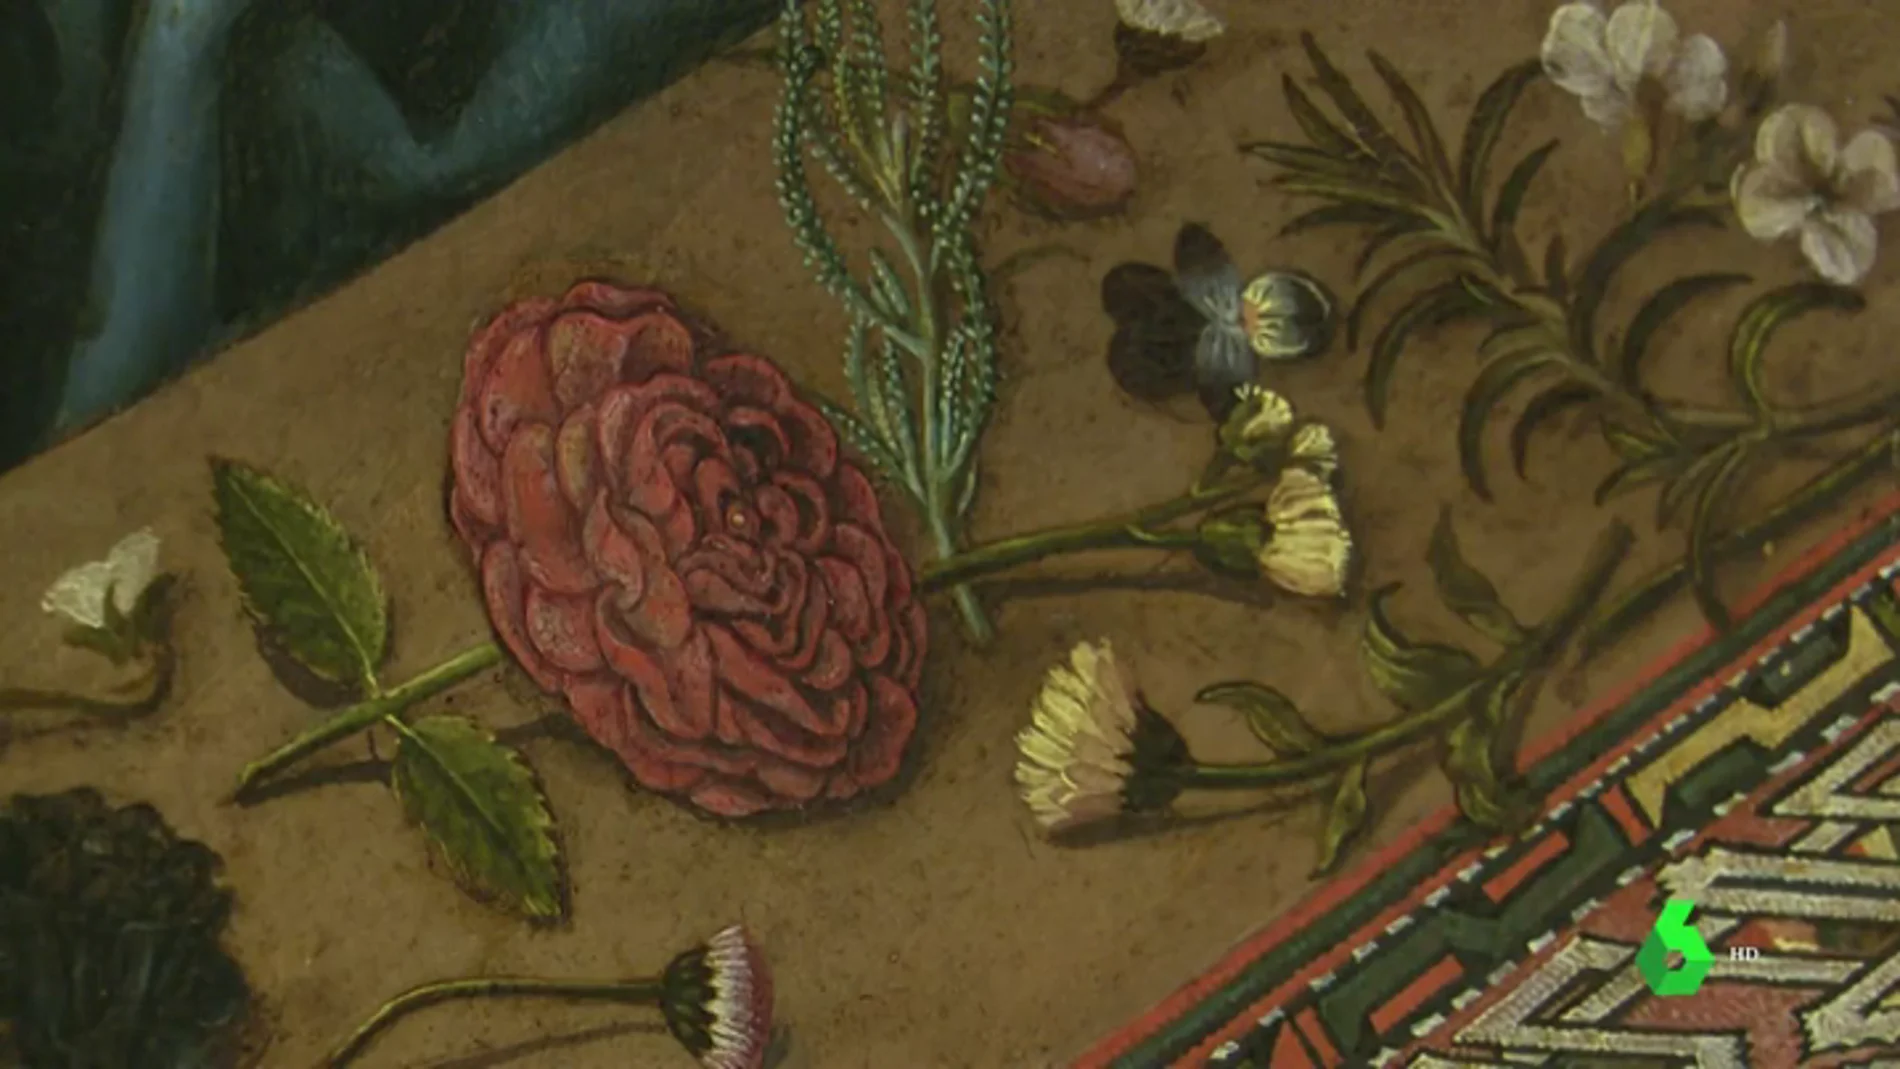 'Ver y oler el arte en todos los sentidos': llegan las exposiciones de flores a los museos